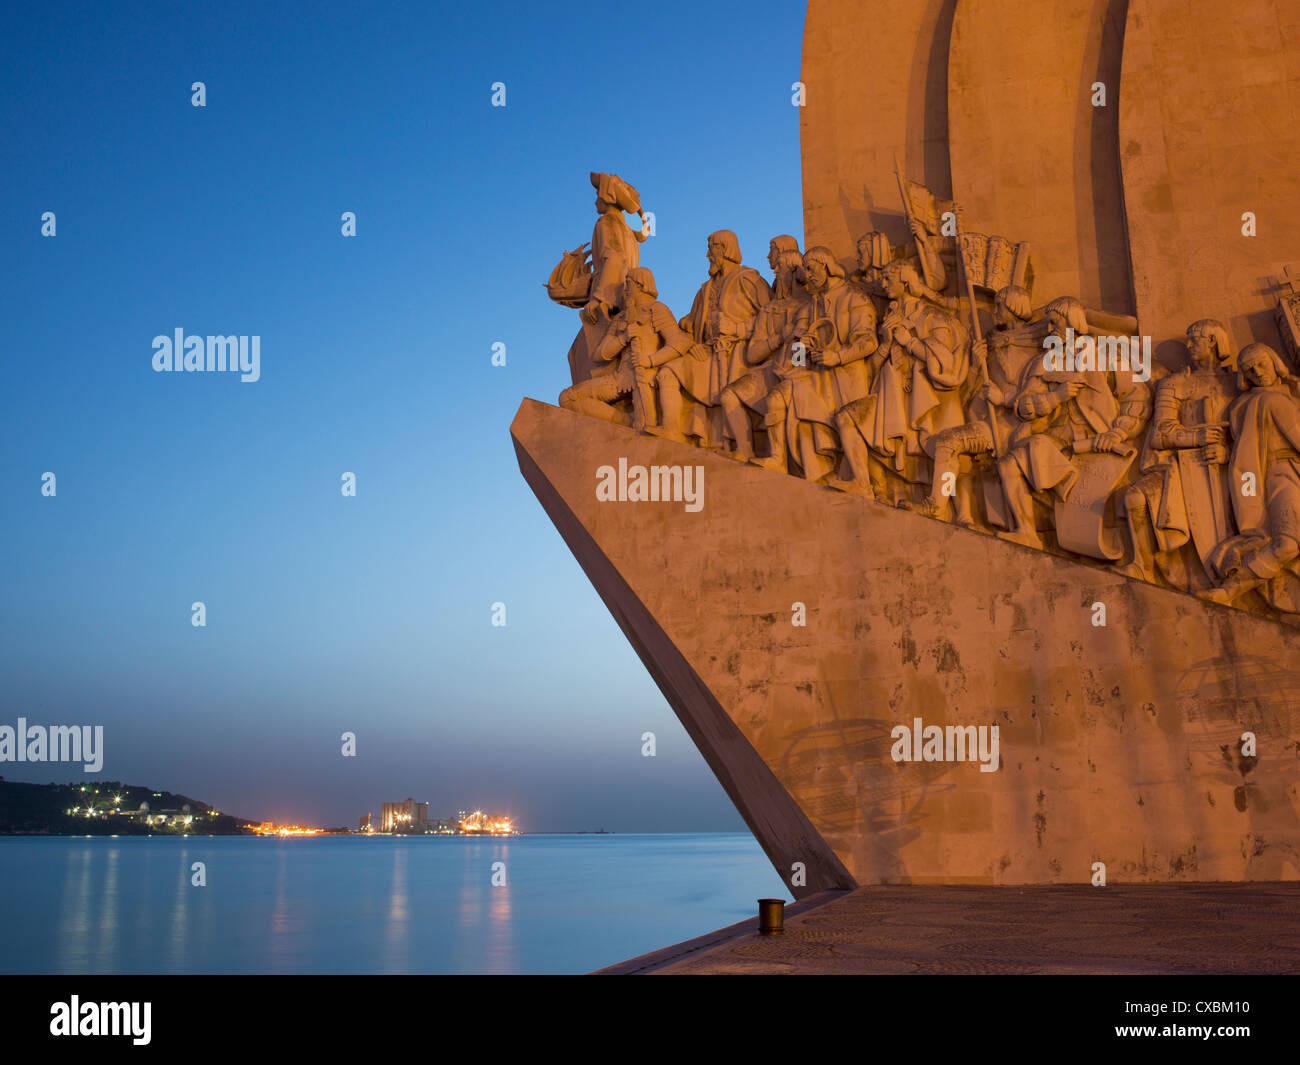 Monument aux découvertes, Belém, Lisbonne, Portugal, Europe Banque D'Images